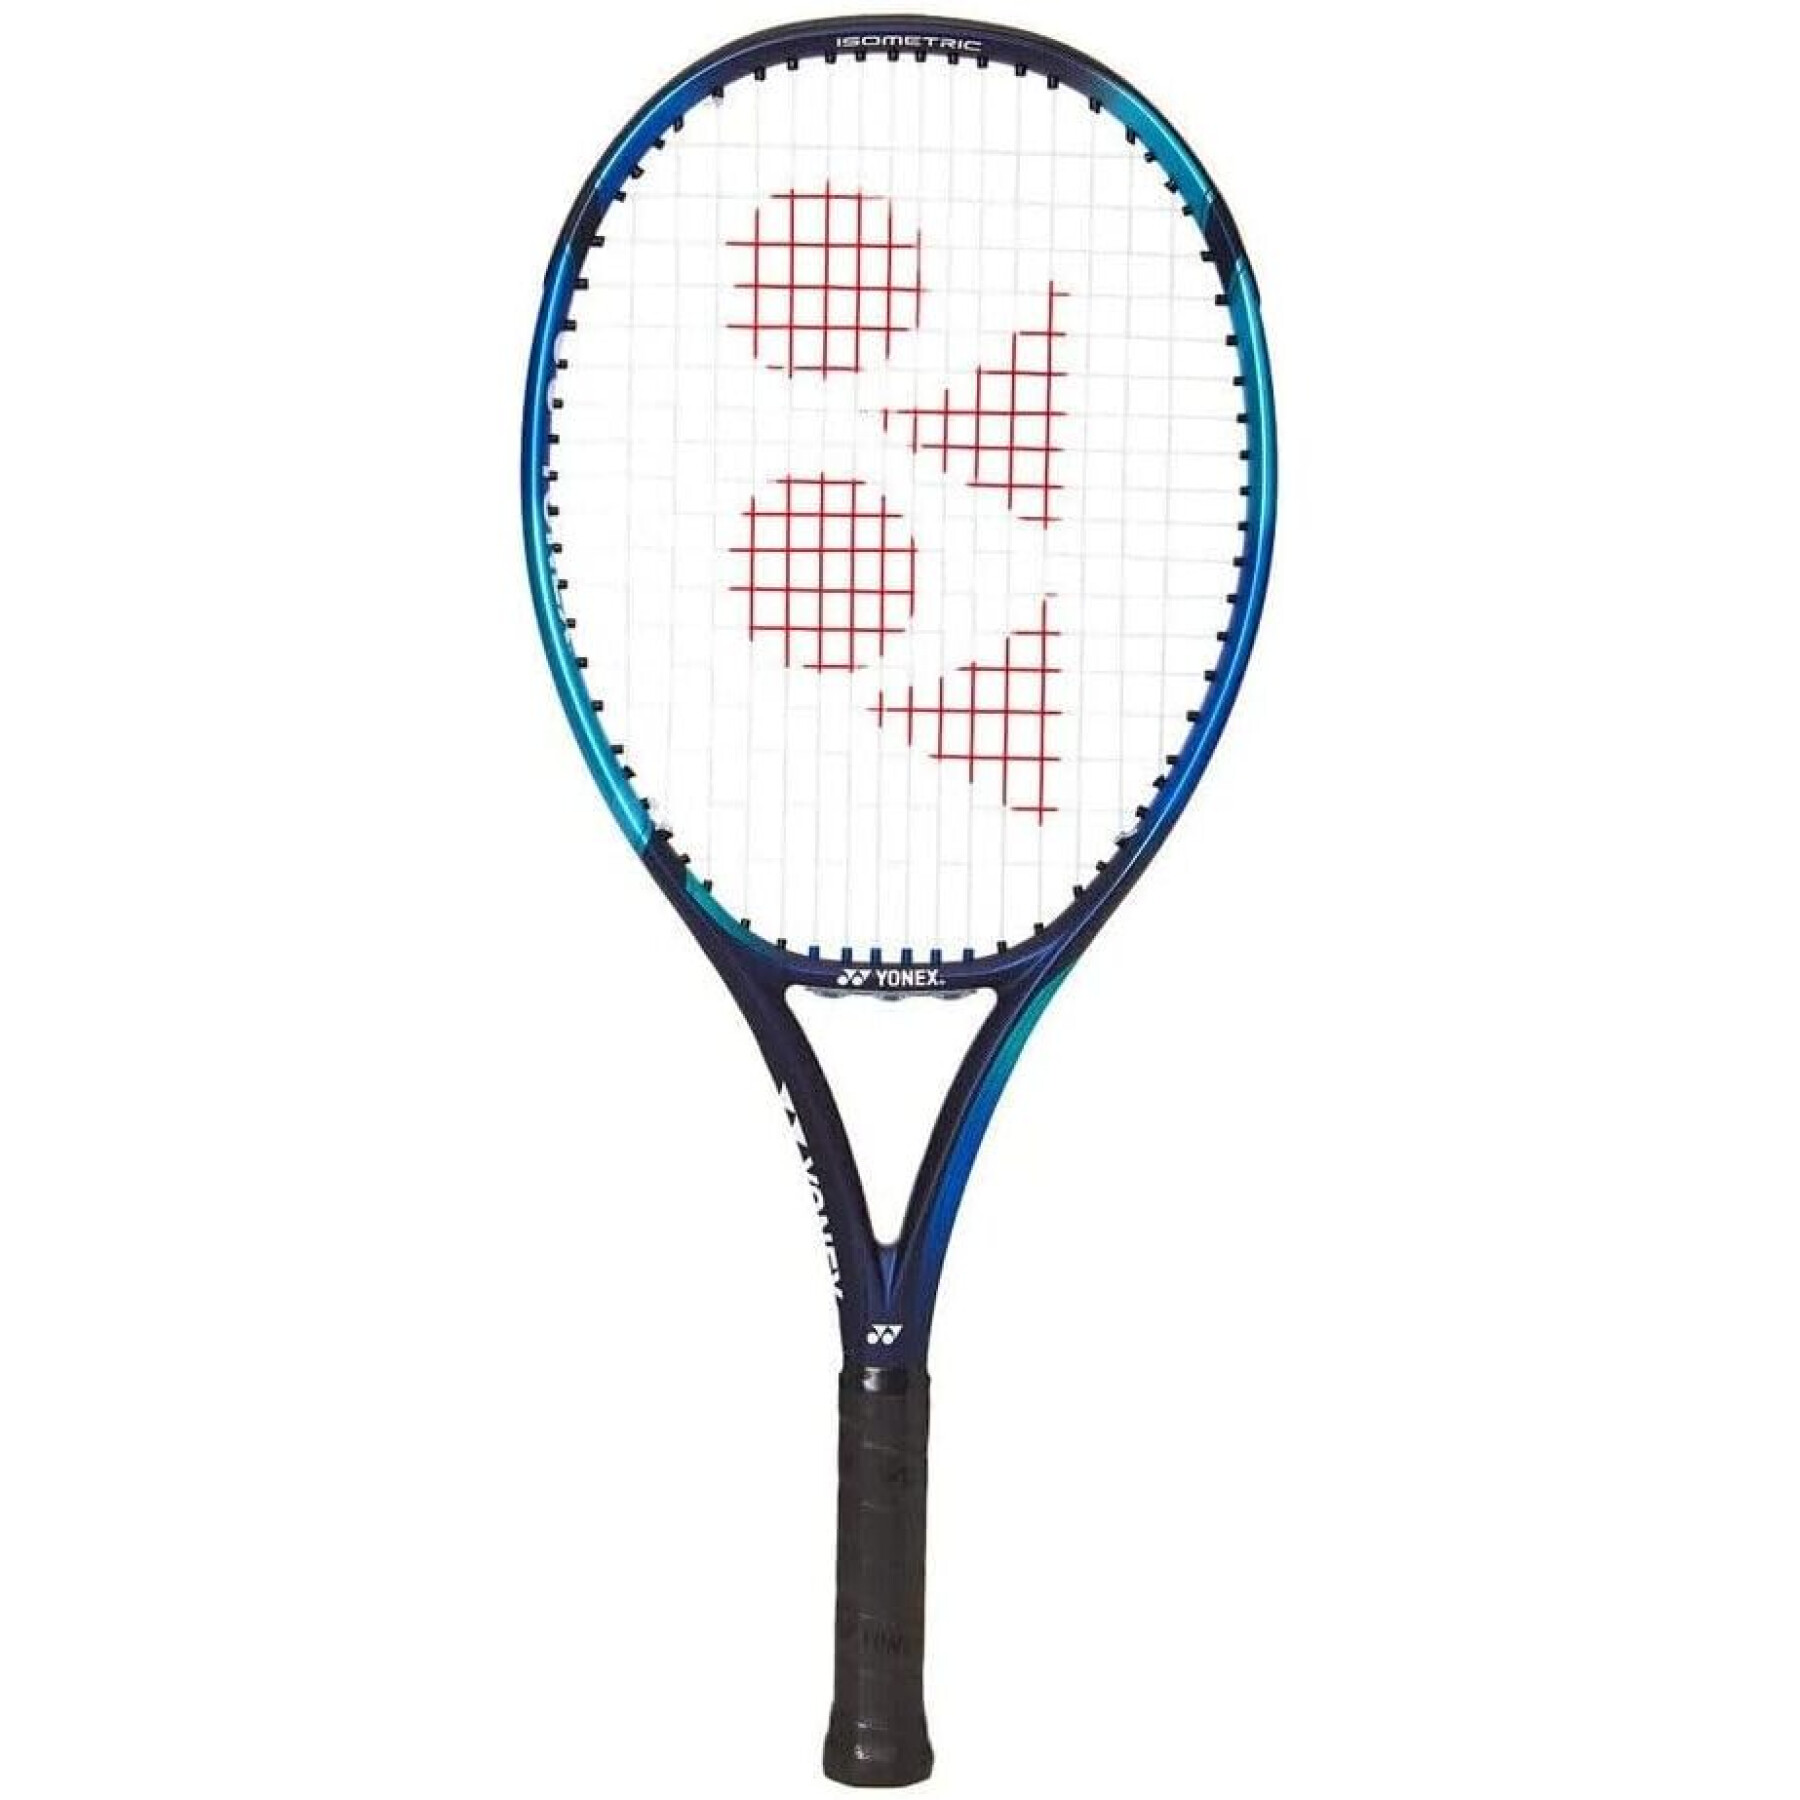 Tennis racket Yonex Ezone 25